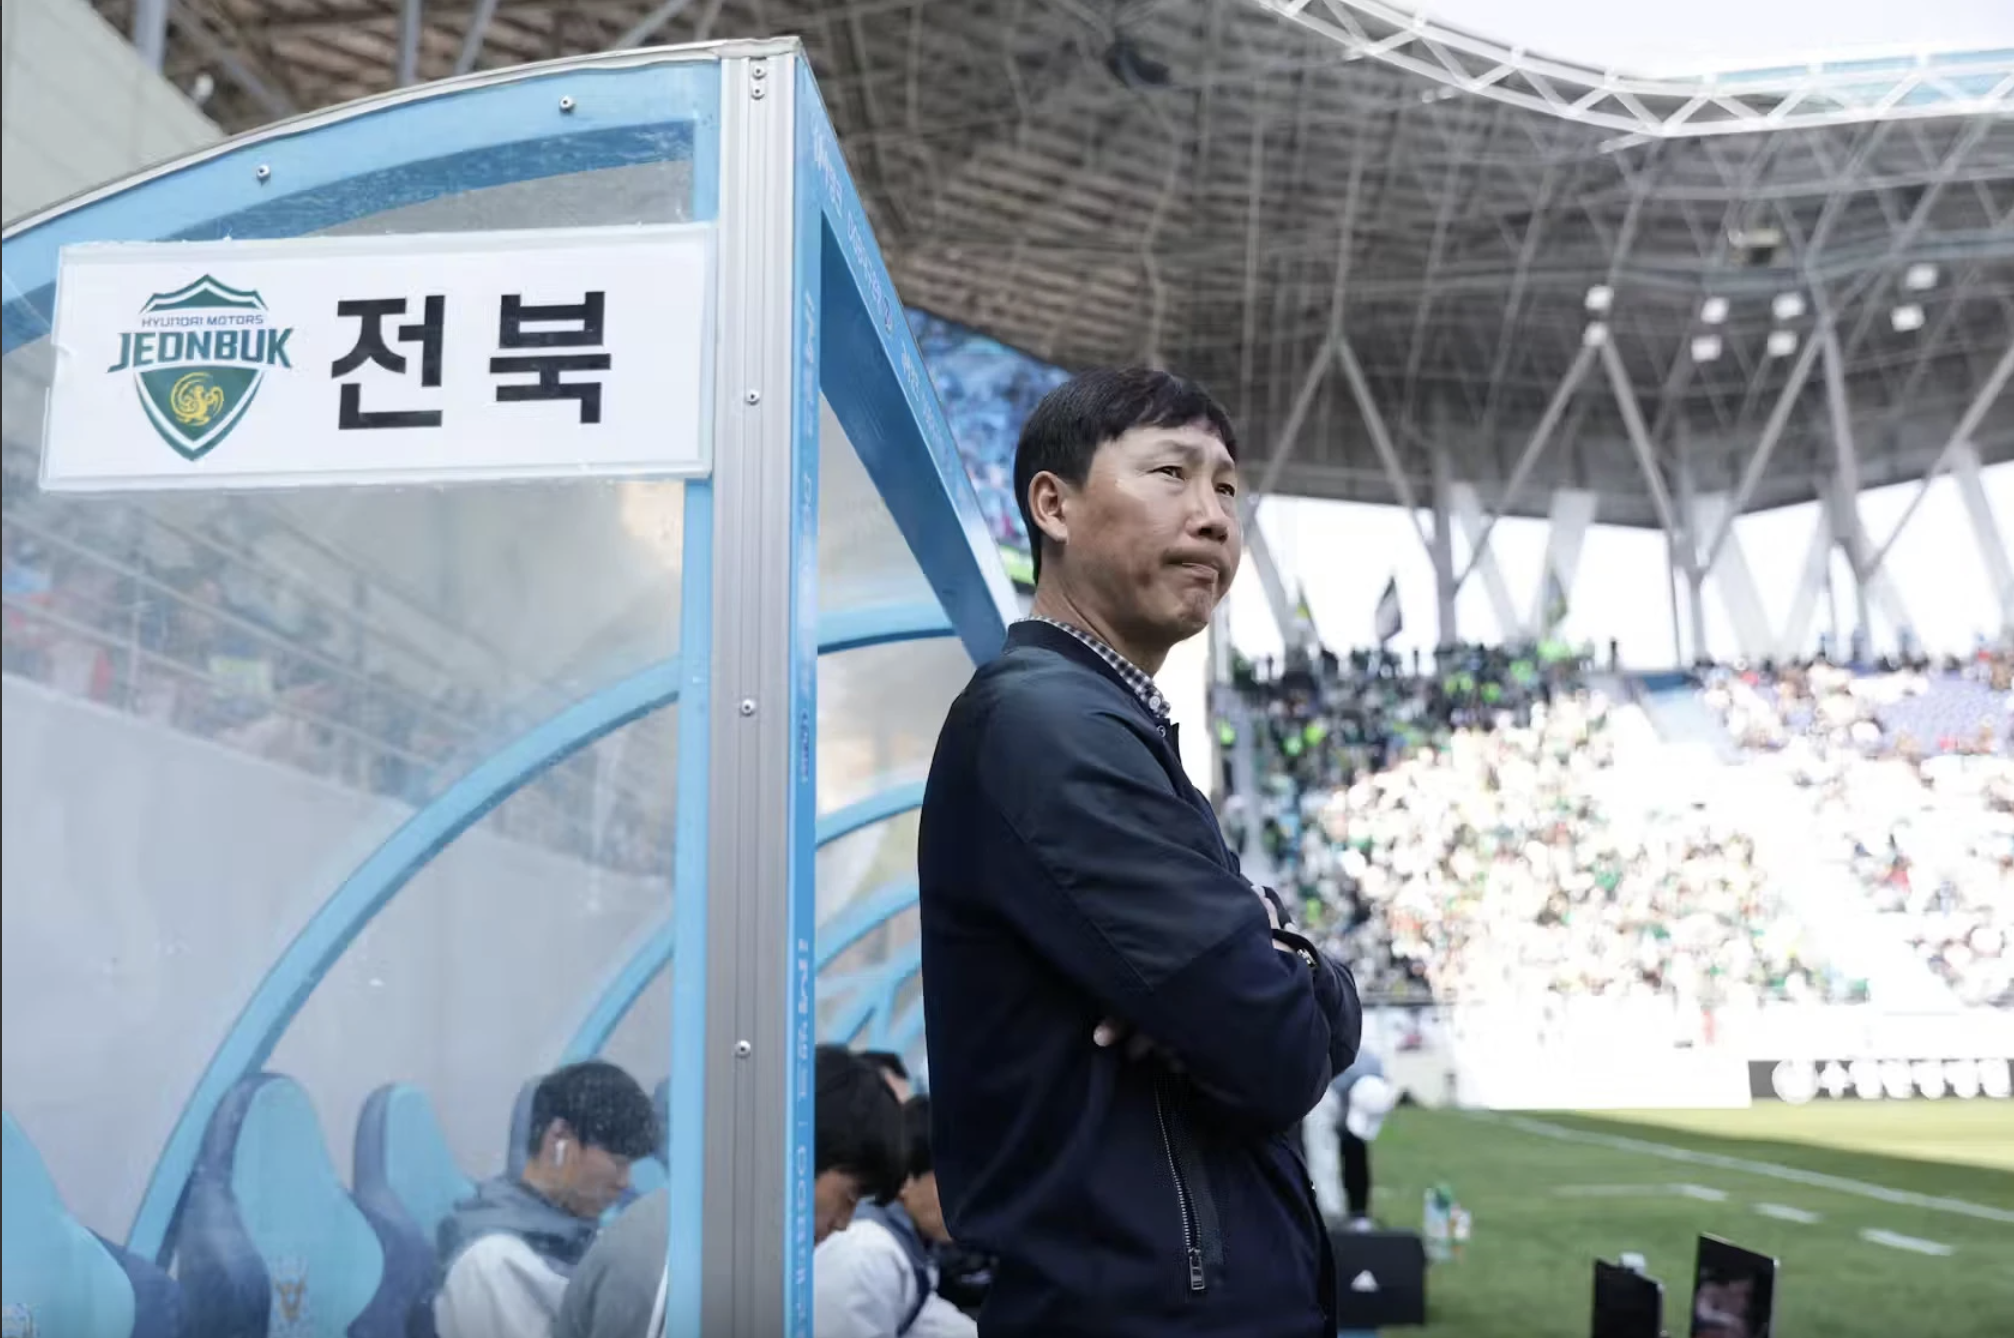 HLV Kim Sang-ik được mô tả như nhà cầm quân có cách chơi bóng chắc chắn